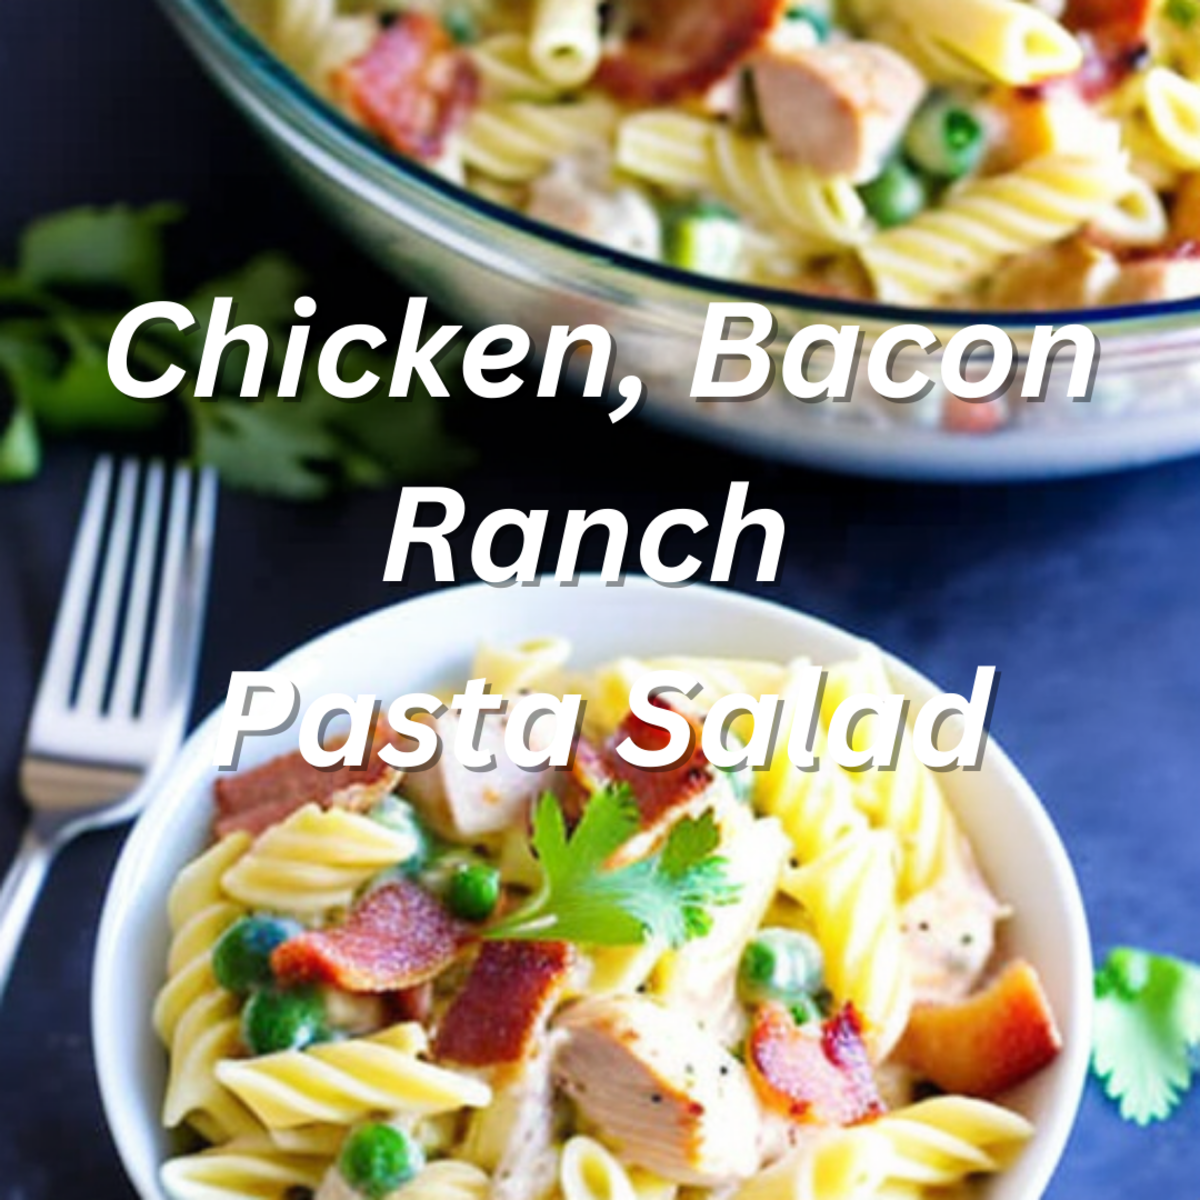 Chicken, Bacon Ranch Pasta Salad